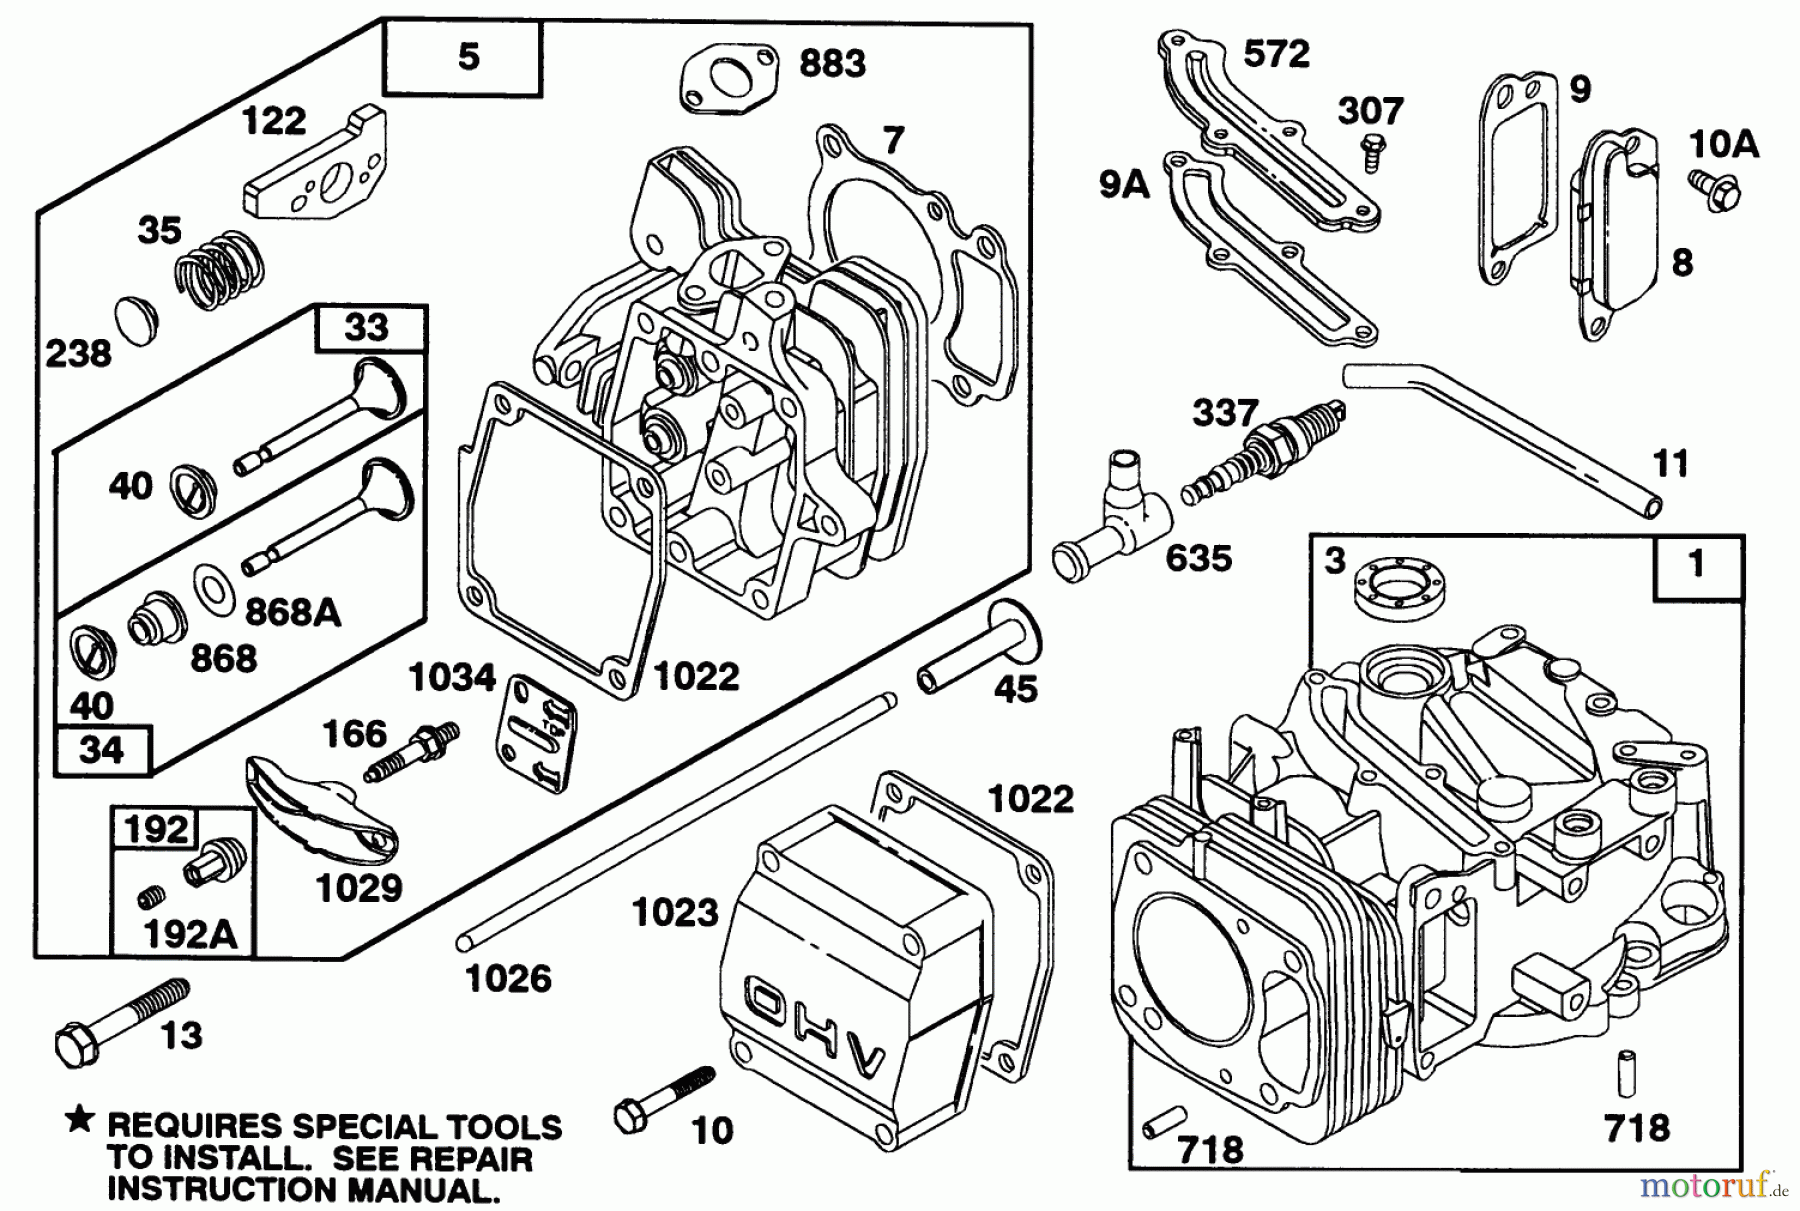  Toro Neu Mowers, Walk-Behind Seite 2 22151 - Toro Lawnmower, 1992 (2000001-2999999) ENGINE GTS 150 77-9140 #1